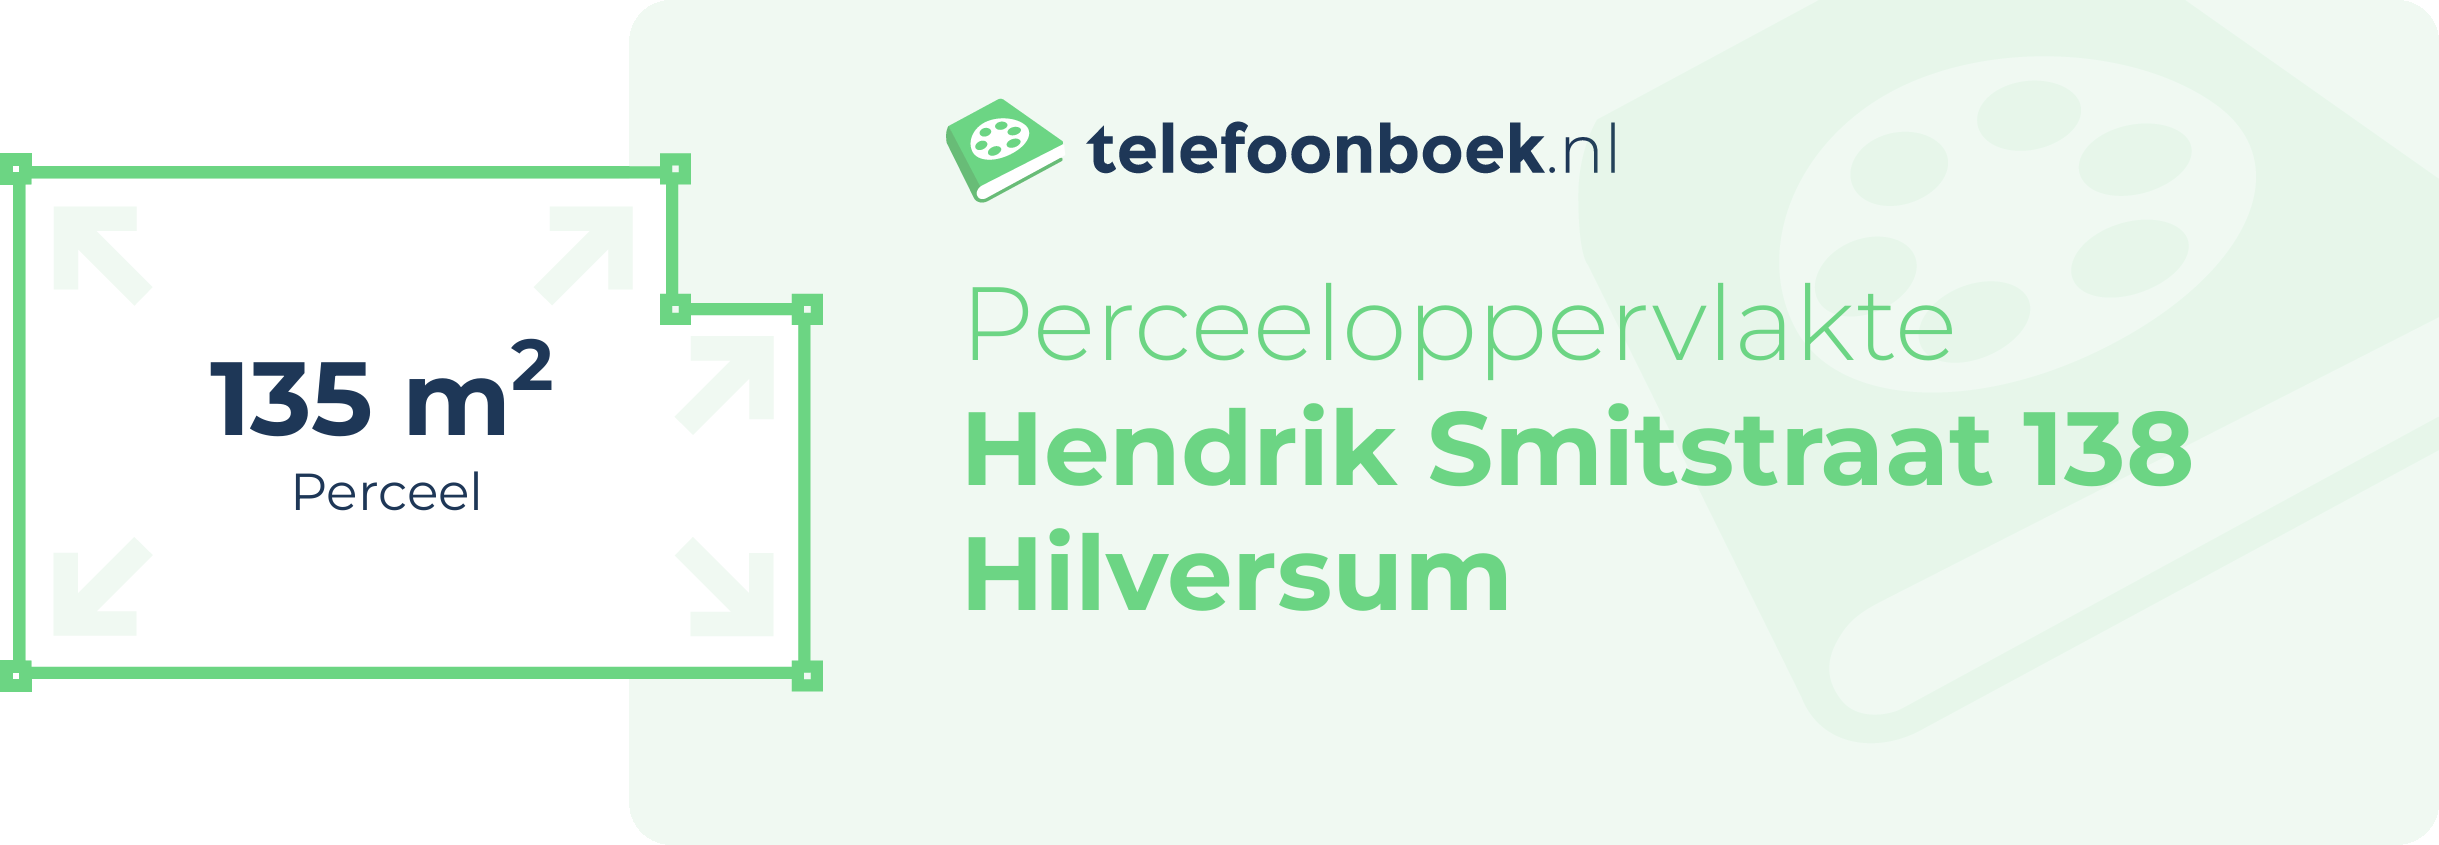 Perceeloppervlakte Hendrik Smitstraat 138 Hilversum